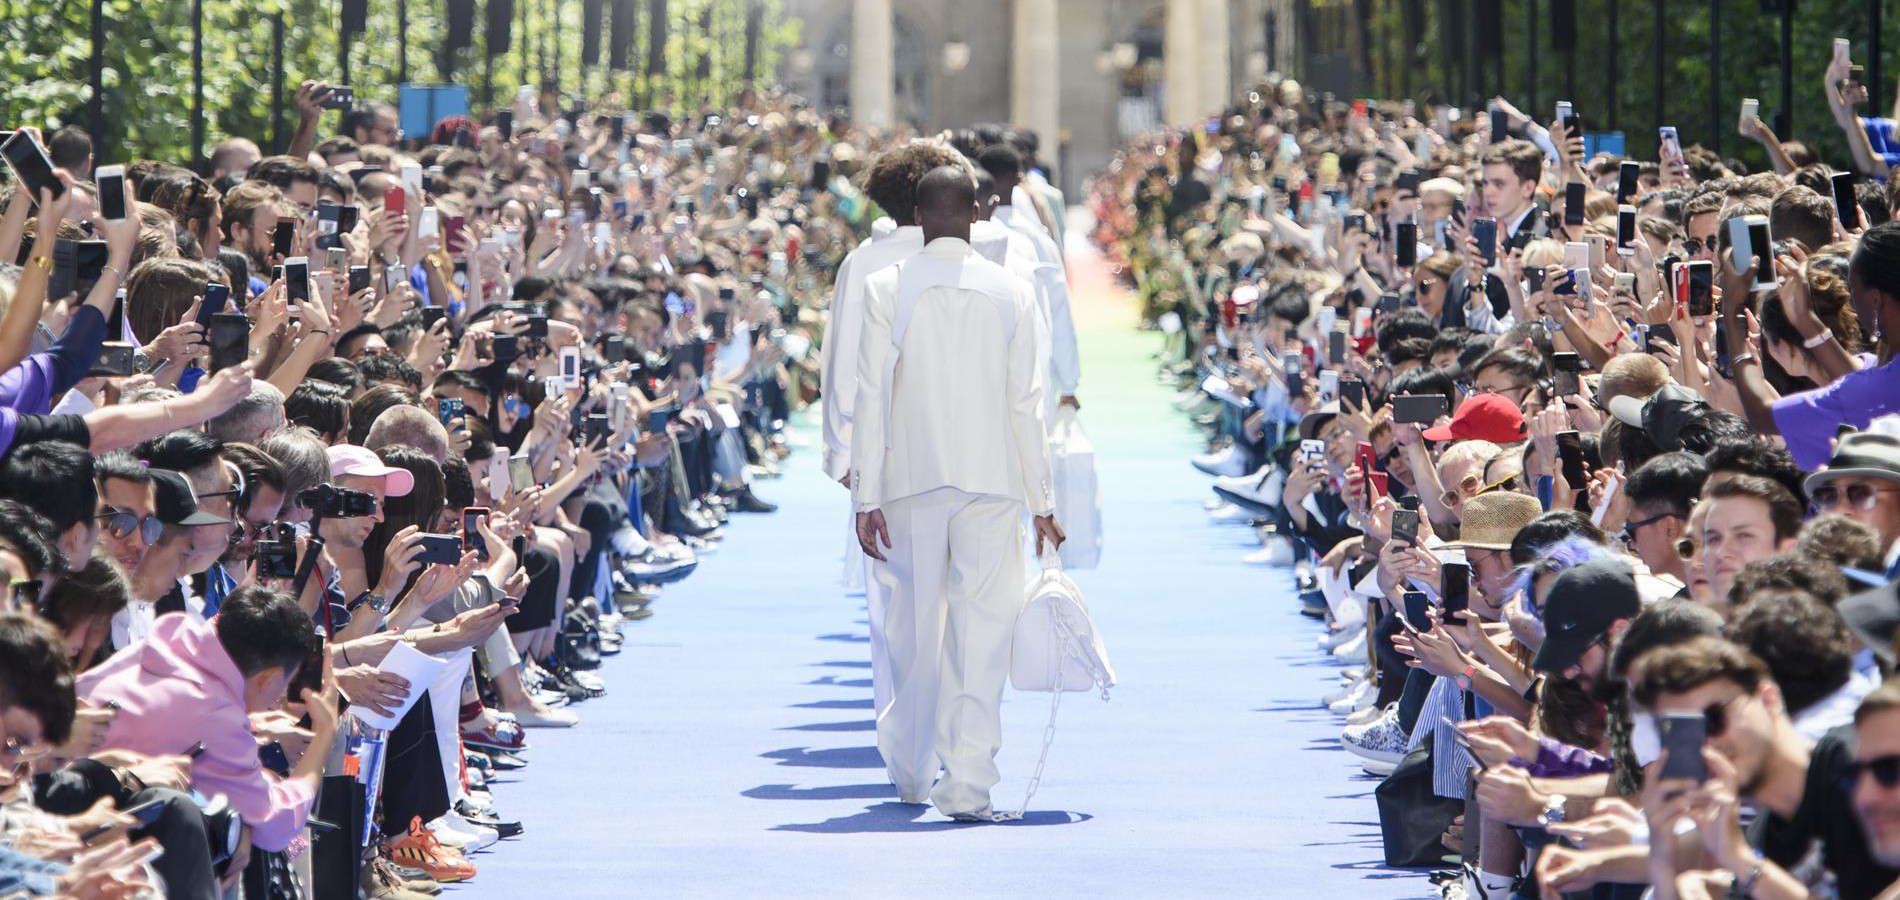 Que faut-il retenir du défilé Louis Vuitton homme printemps-été